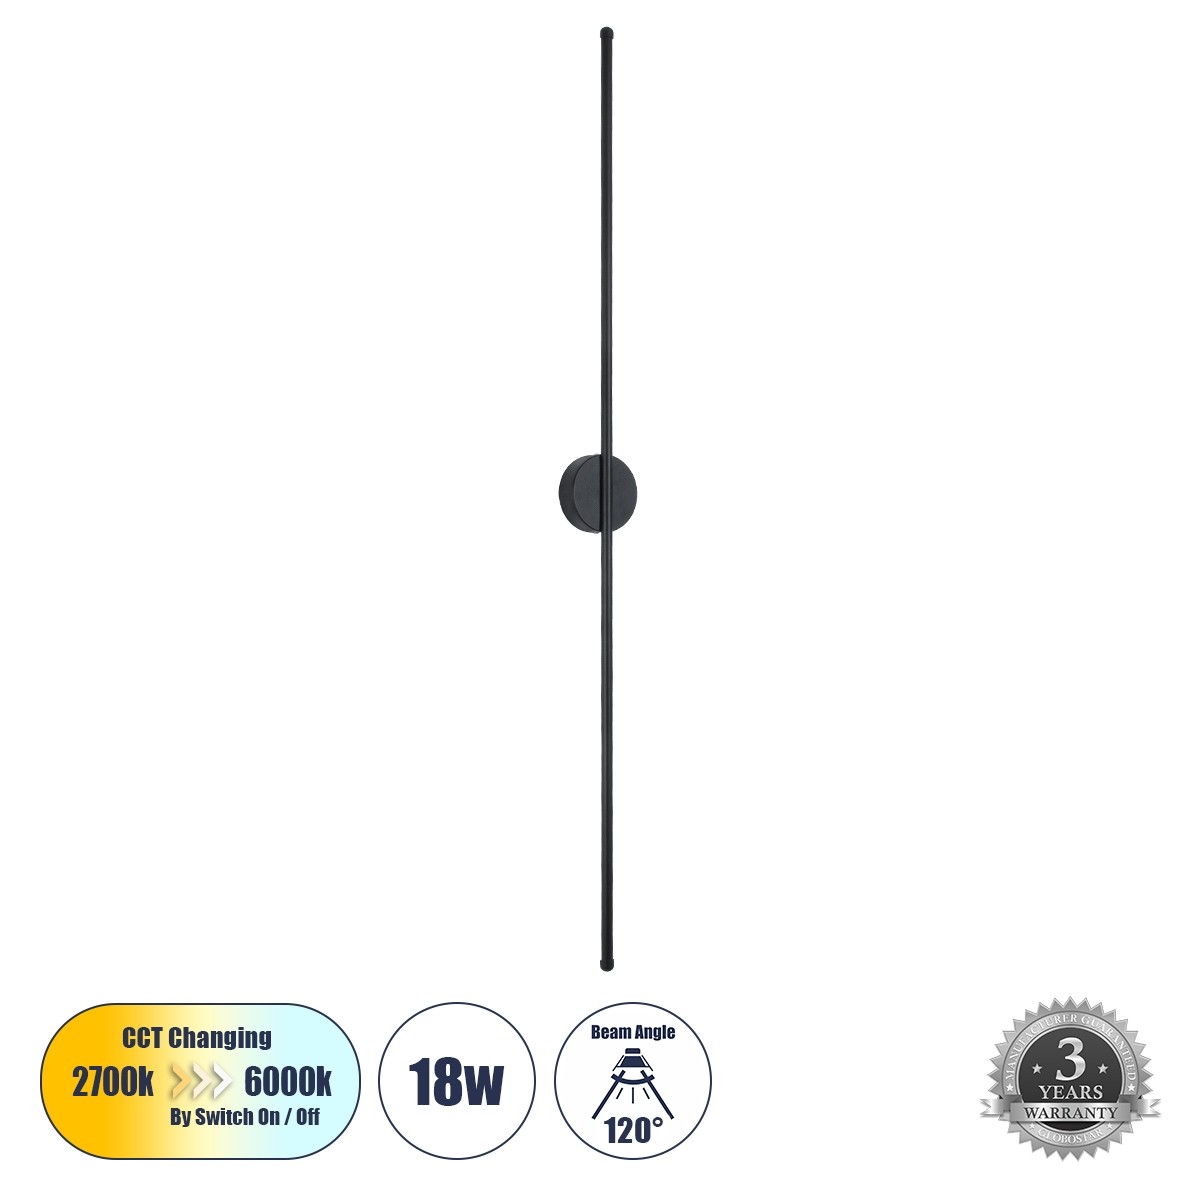 Led Γραμμικό Φωτιστικό Τοίχου - Απλίκα DIADEM 18Watt Μαύρο με Εναλλαγή Φωτισμού Μ10 x Π4 x Υ120cm 61333